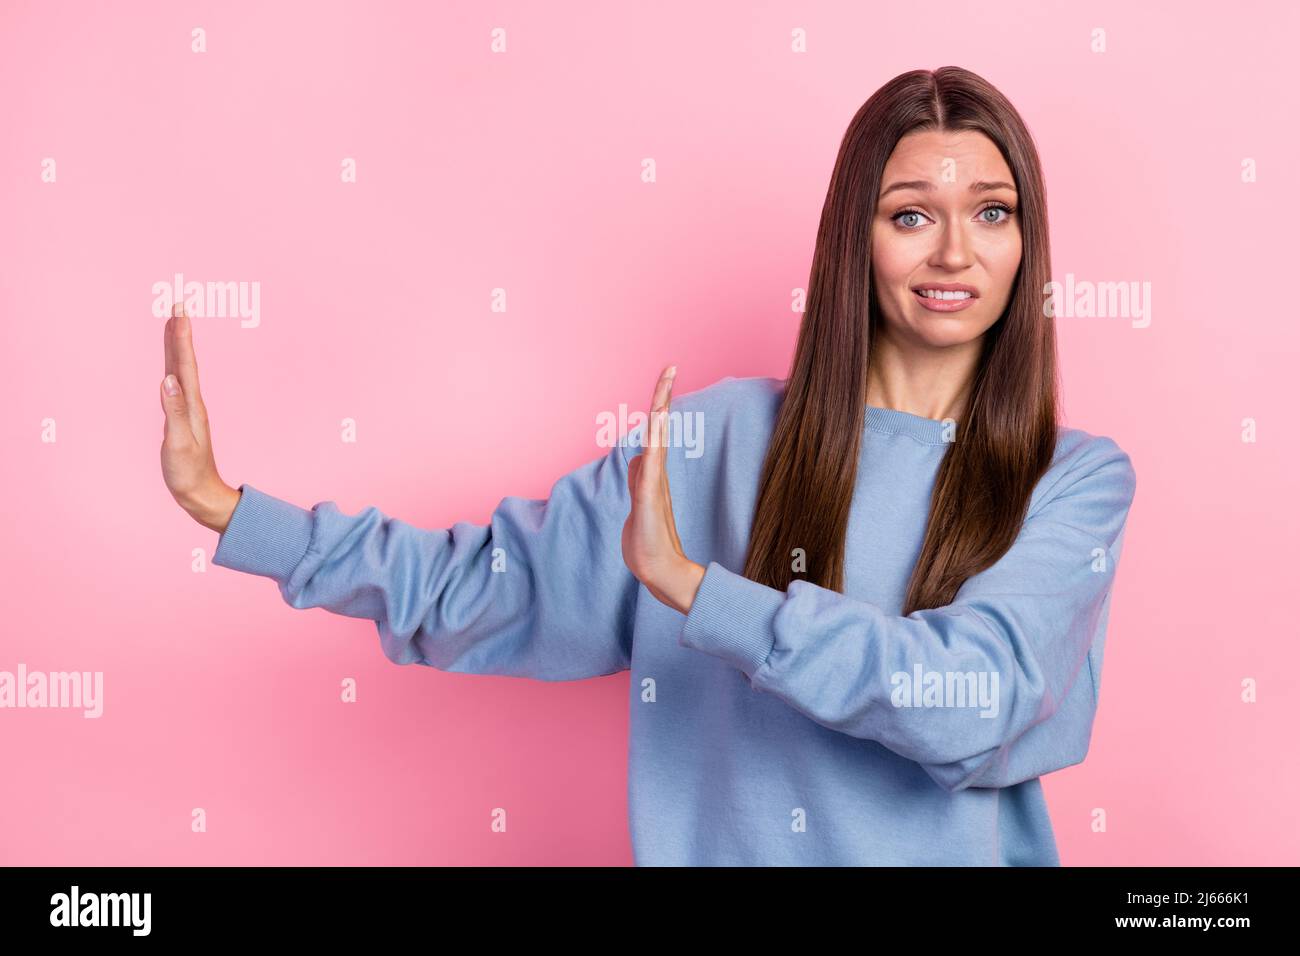 Portrait von attraktiven besorgt verwirrt Mädchen zeigt beiseite Stop-Zeichen isoliert über rosa Pastellfarbe Hintergrund Stockfoto